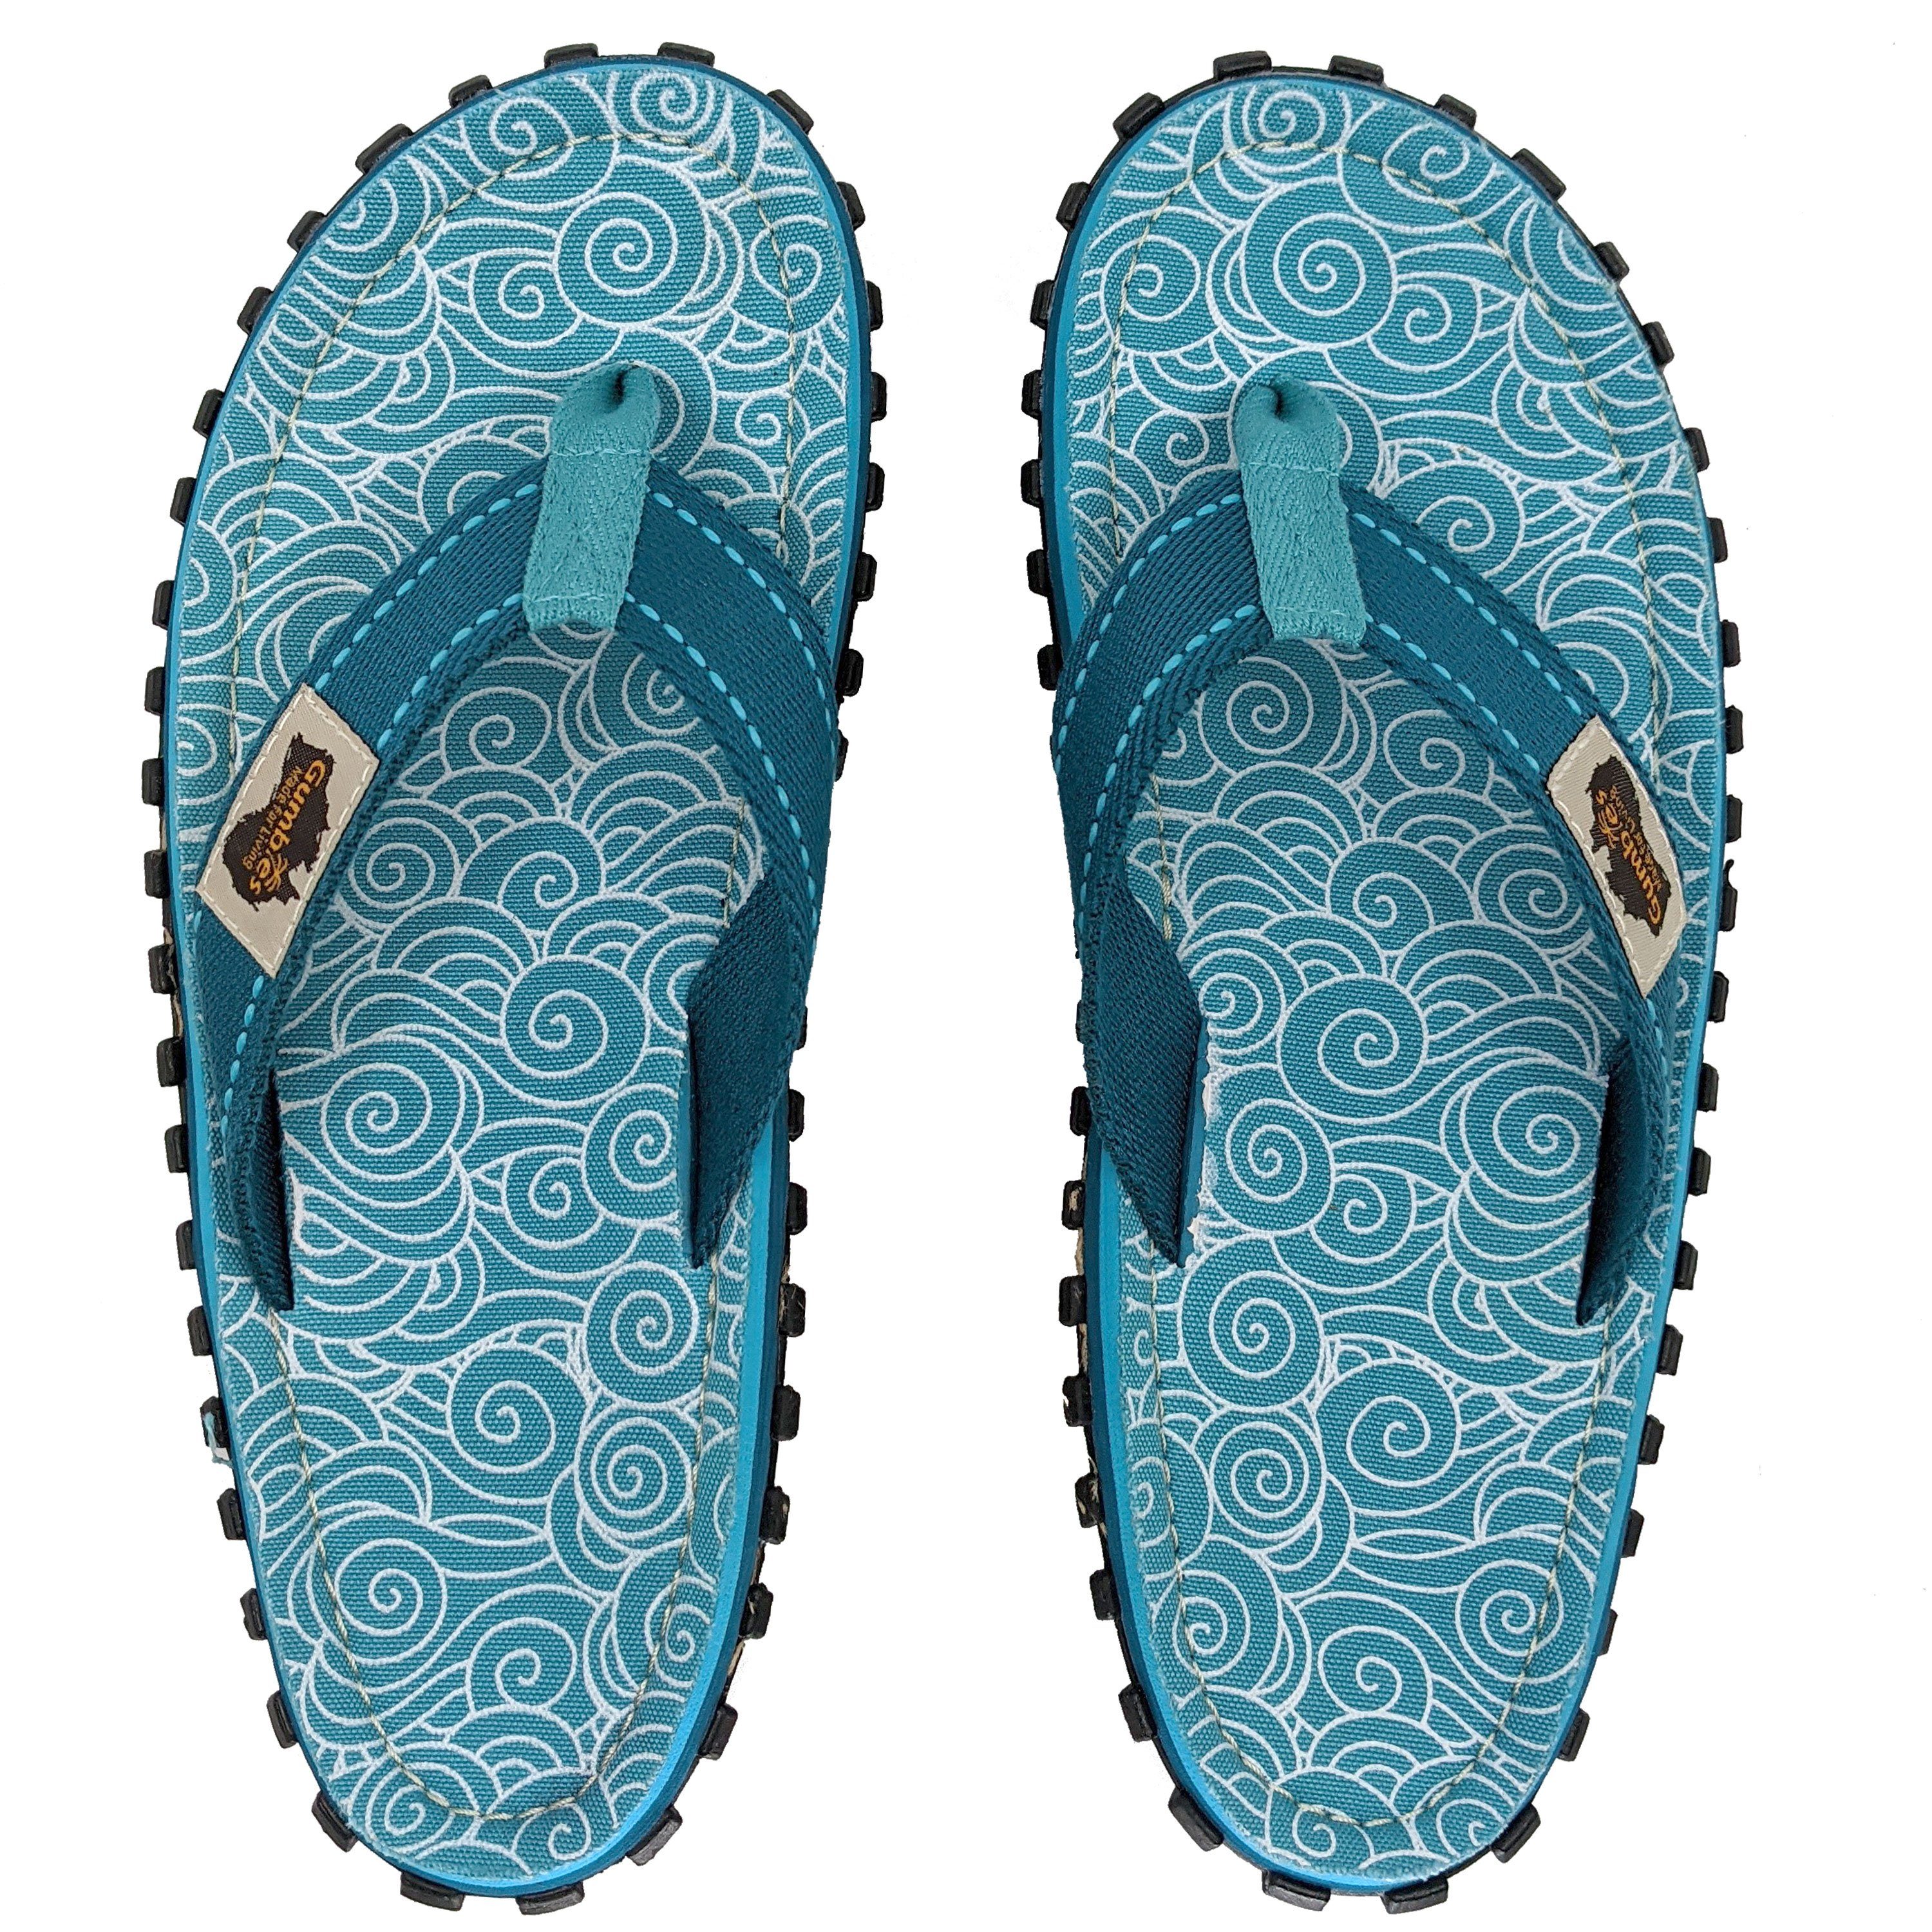 Schuhe  Gumbies Original in Turquoise Swirls T-Strap-Zehentrenner aus recycelten Materialien in farbenfrohen Designs